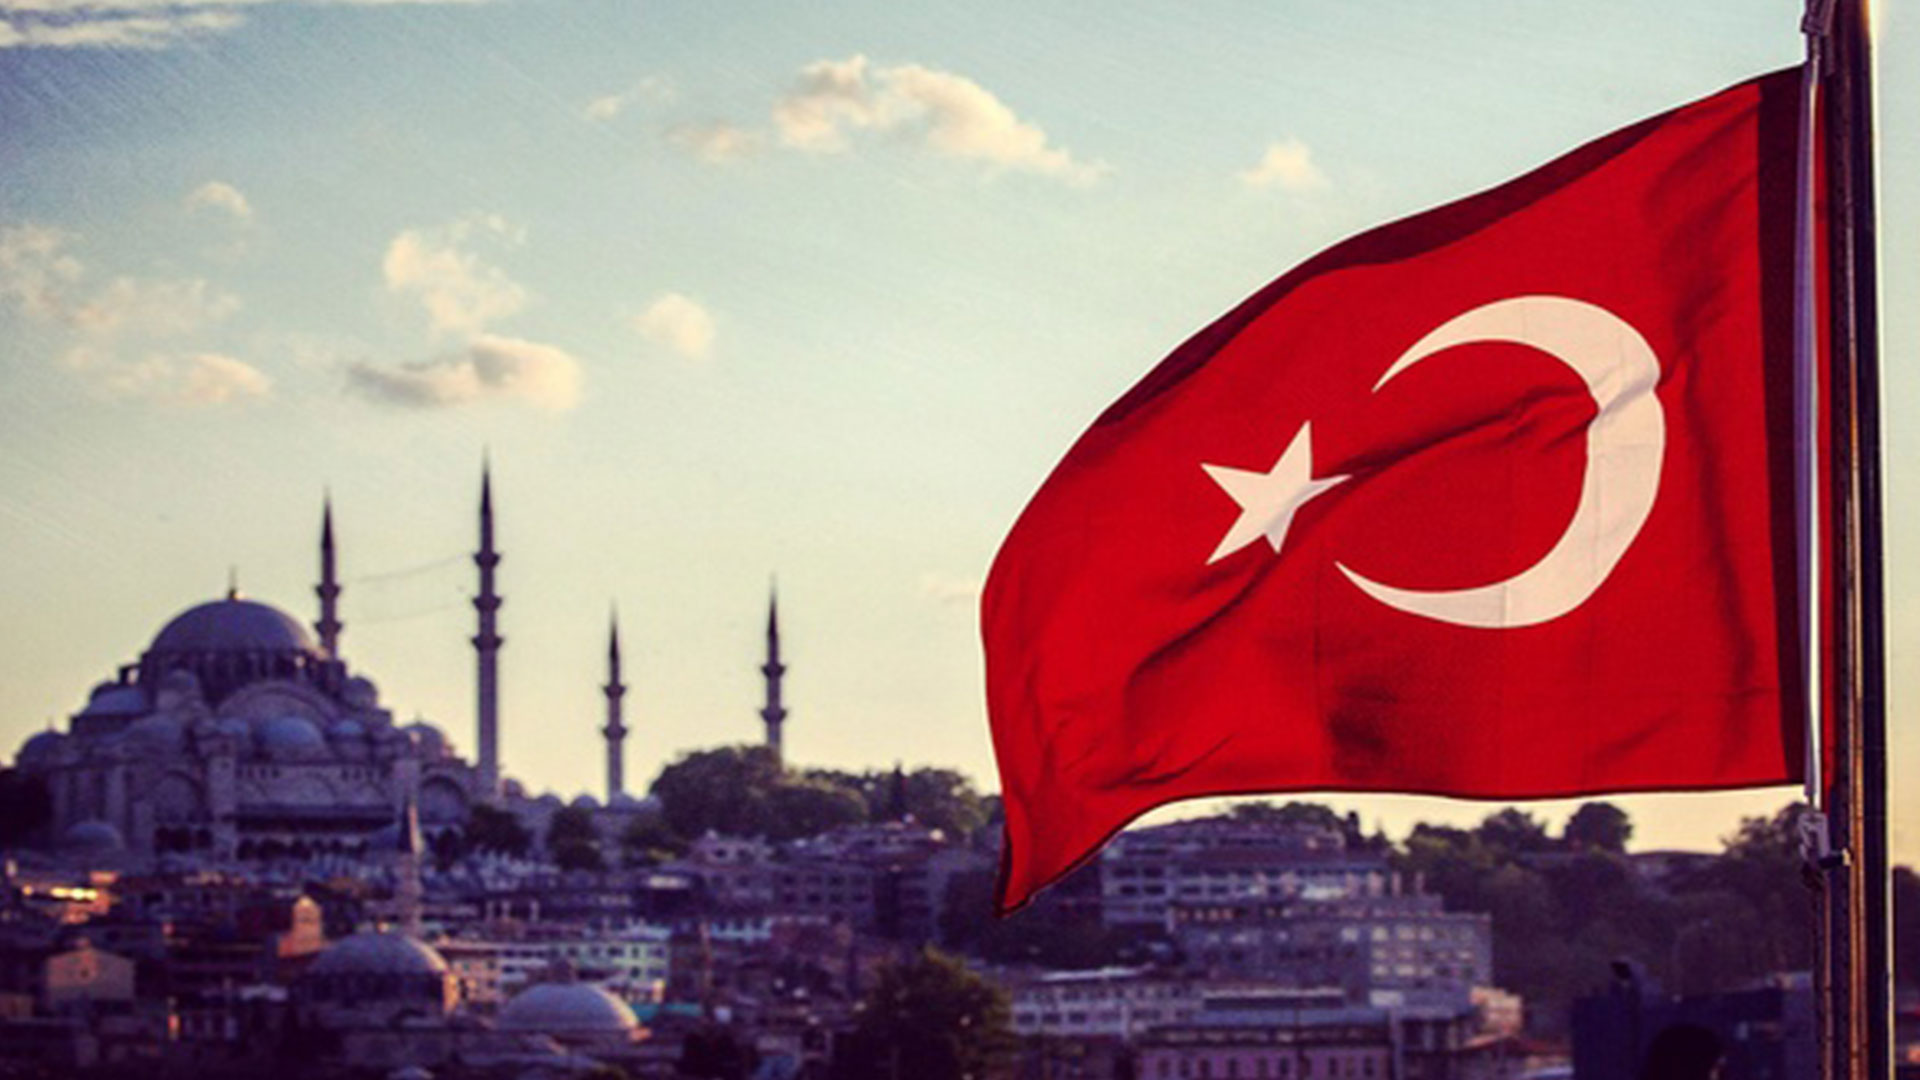 en guzel turk bayrakli manzarali camiler 14